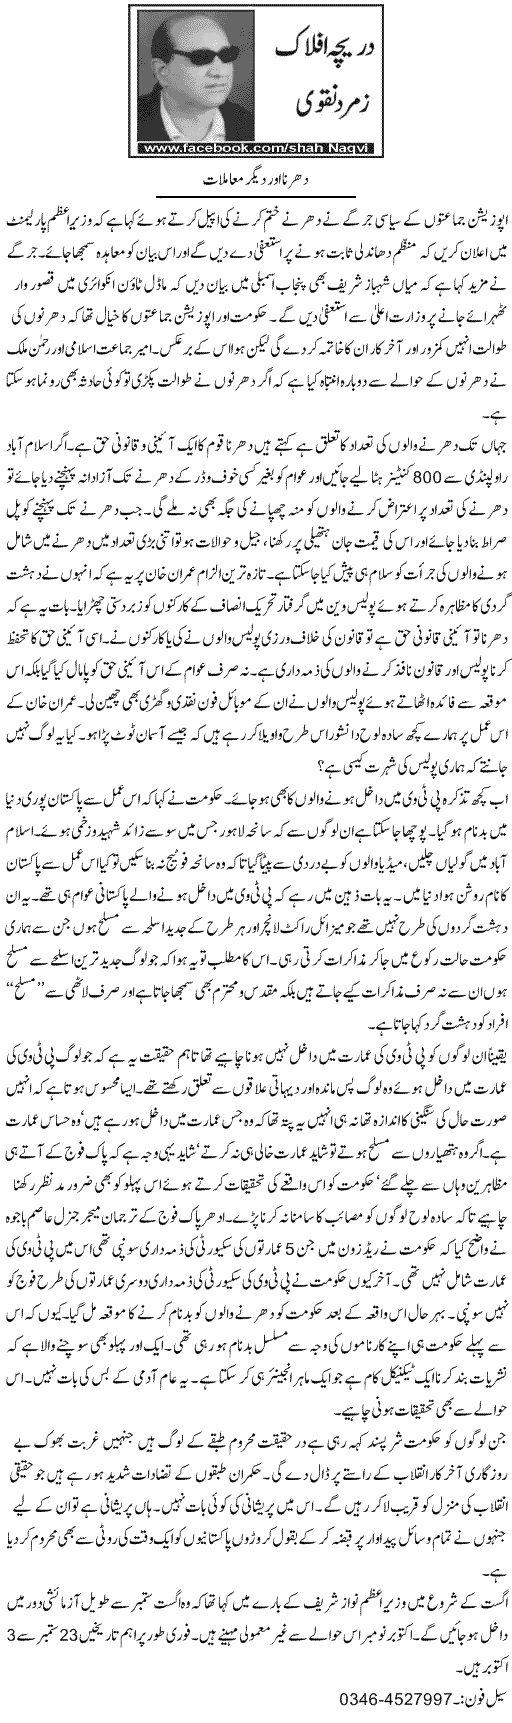 Minhaj-ul-Quran  Print Media Coverage Daily Express - Zamurd Naqvi